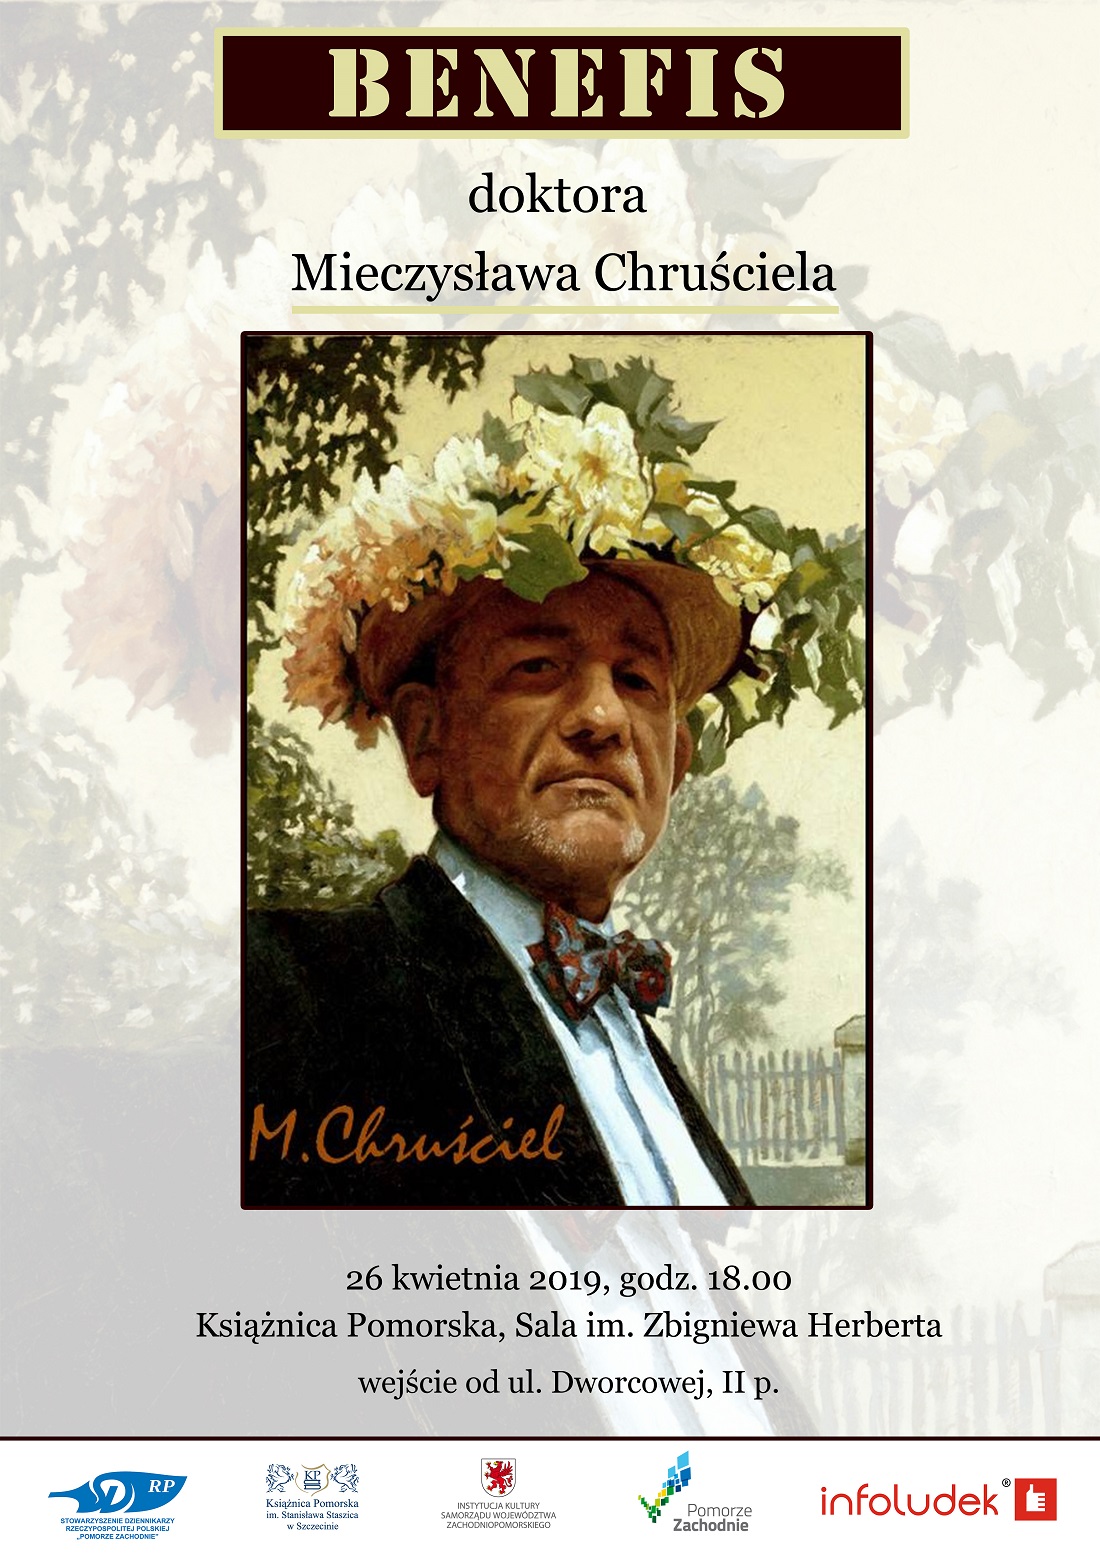 Mieczysław Chruściel